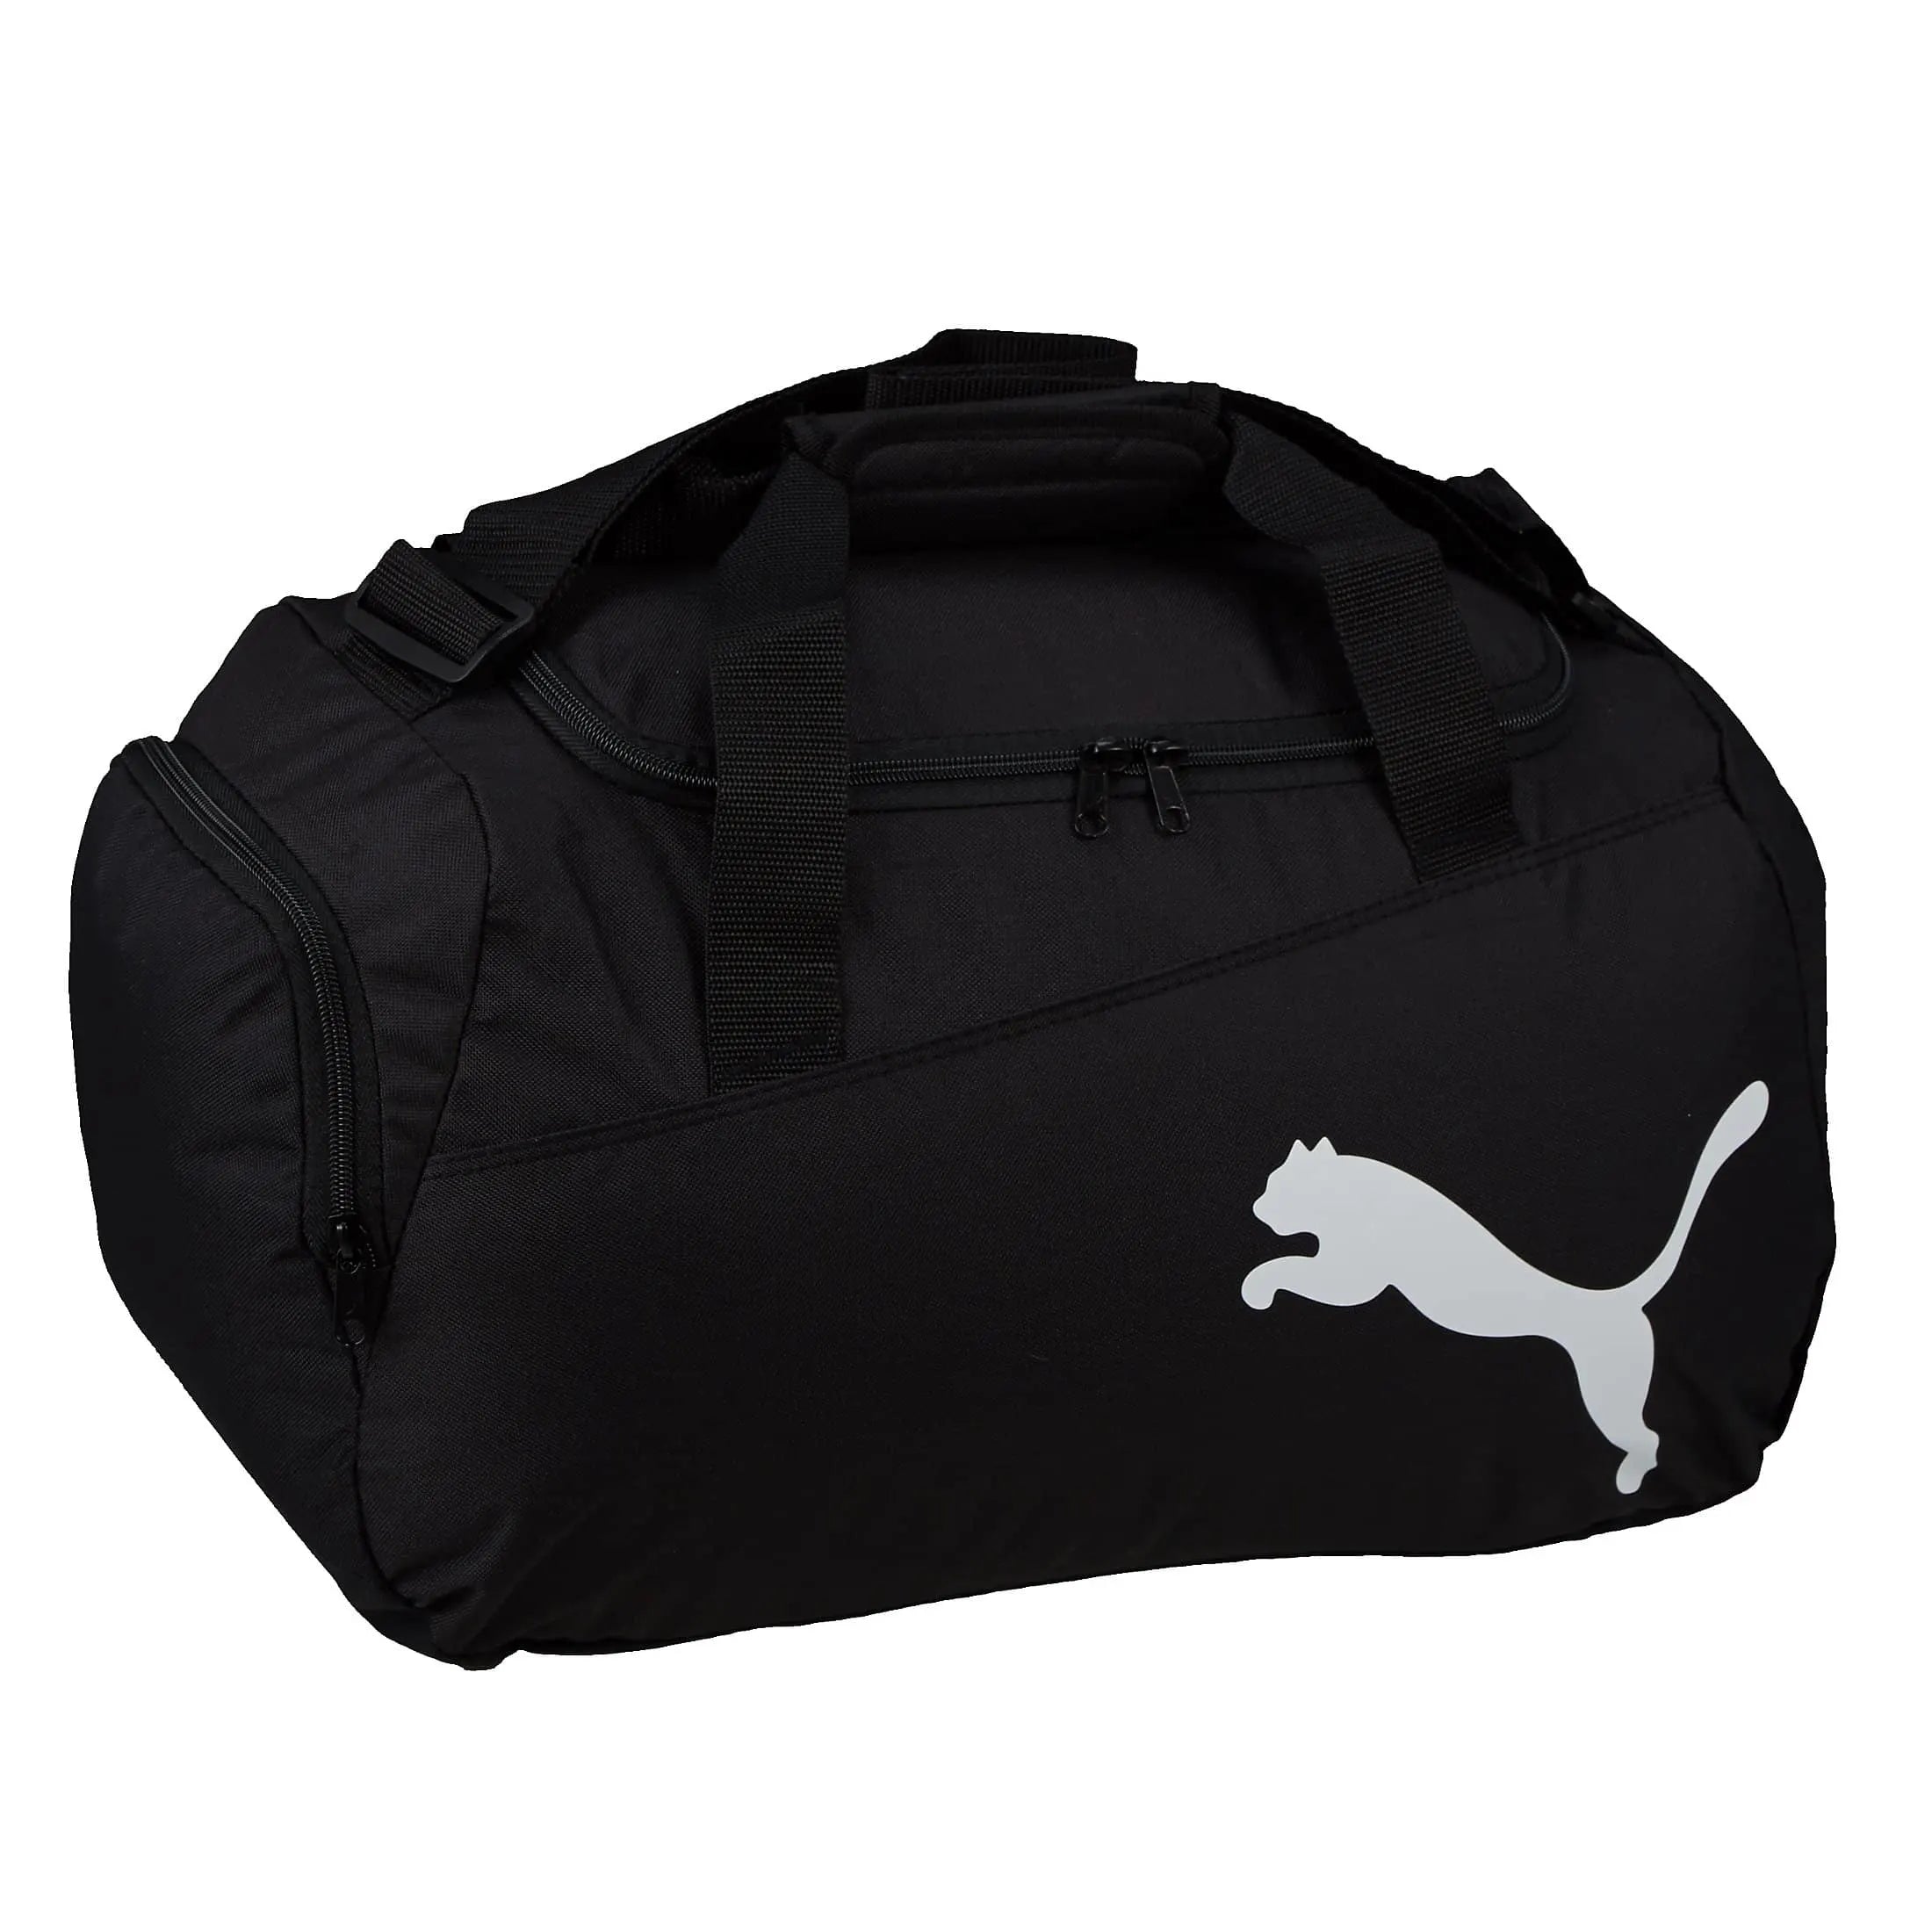 Puma Pro Training Small Bag sac de sport 48 cm - noir-puma royal-blanc